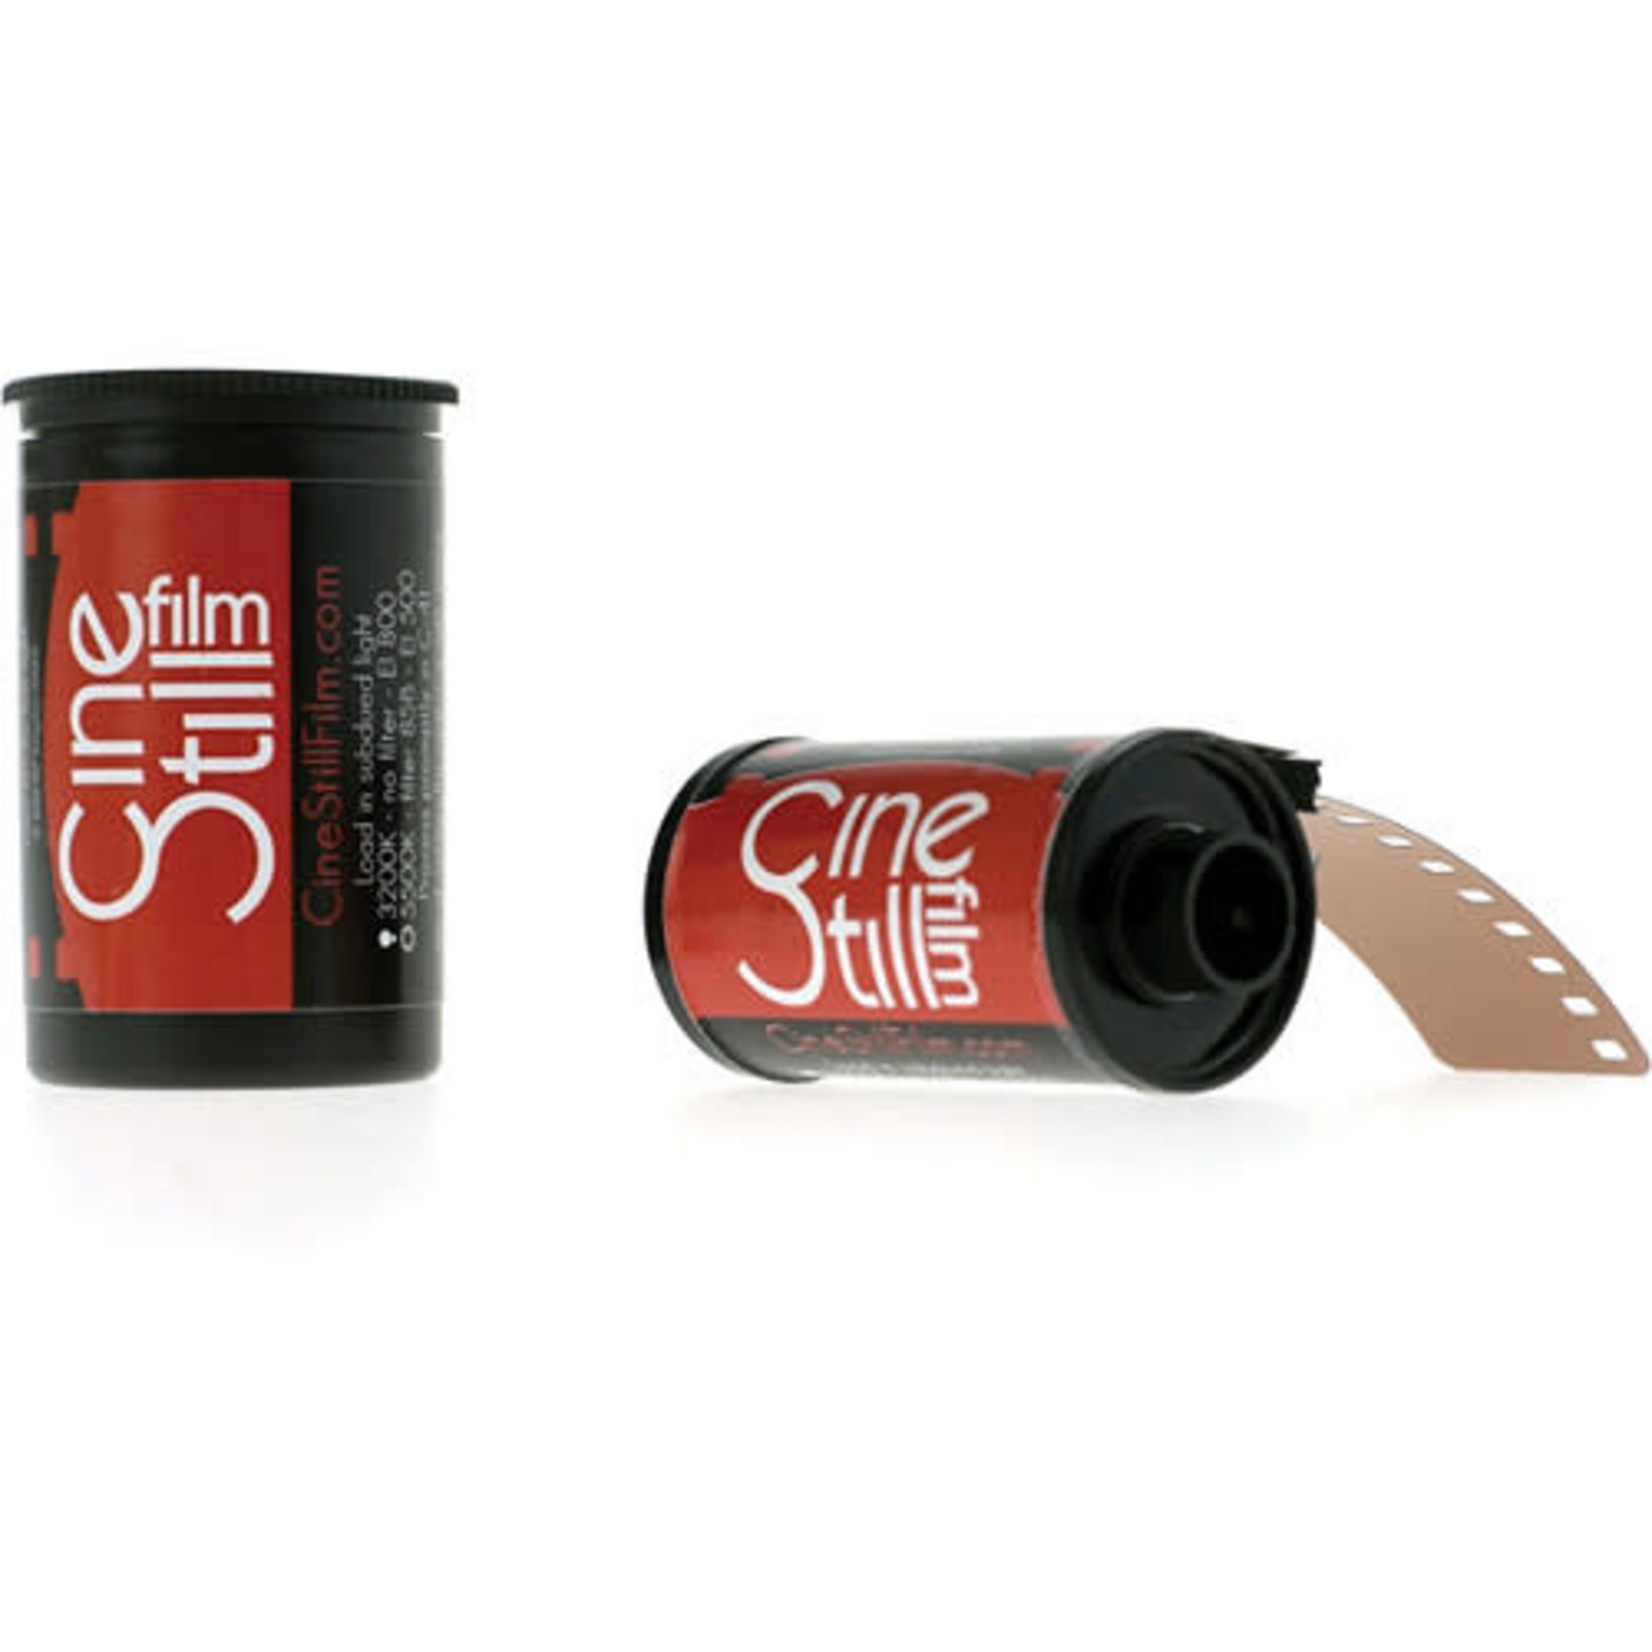 CineStill CineStill Film 800Tungsten Xpro C-41 Color Negative Film (35mm Roll Film, 36 Exposures)